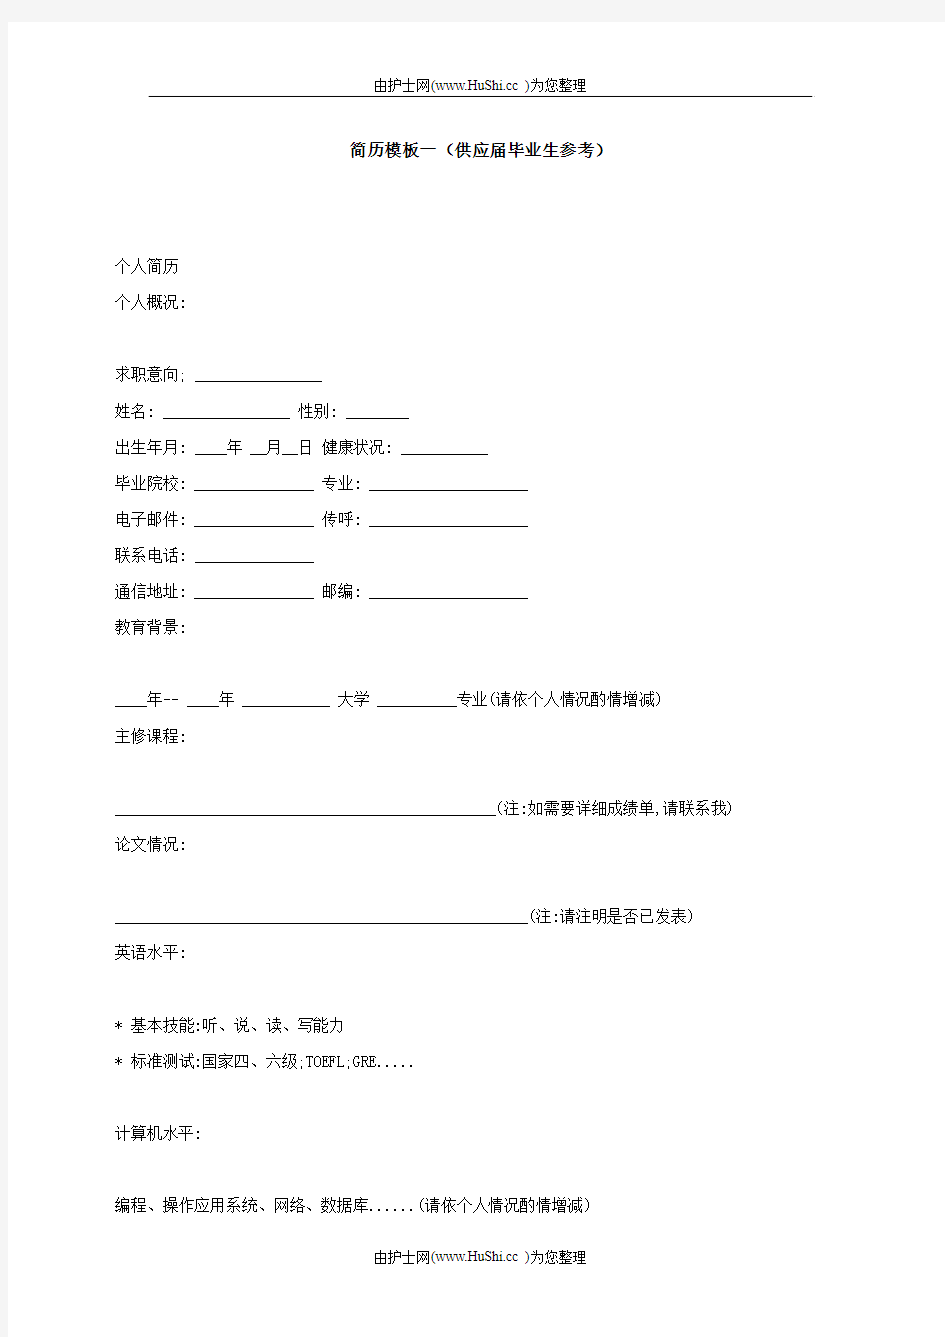 中文简历模板 (6)